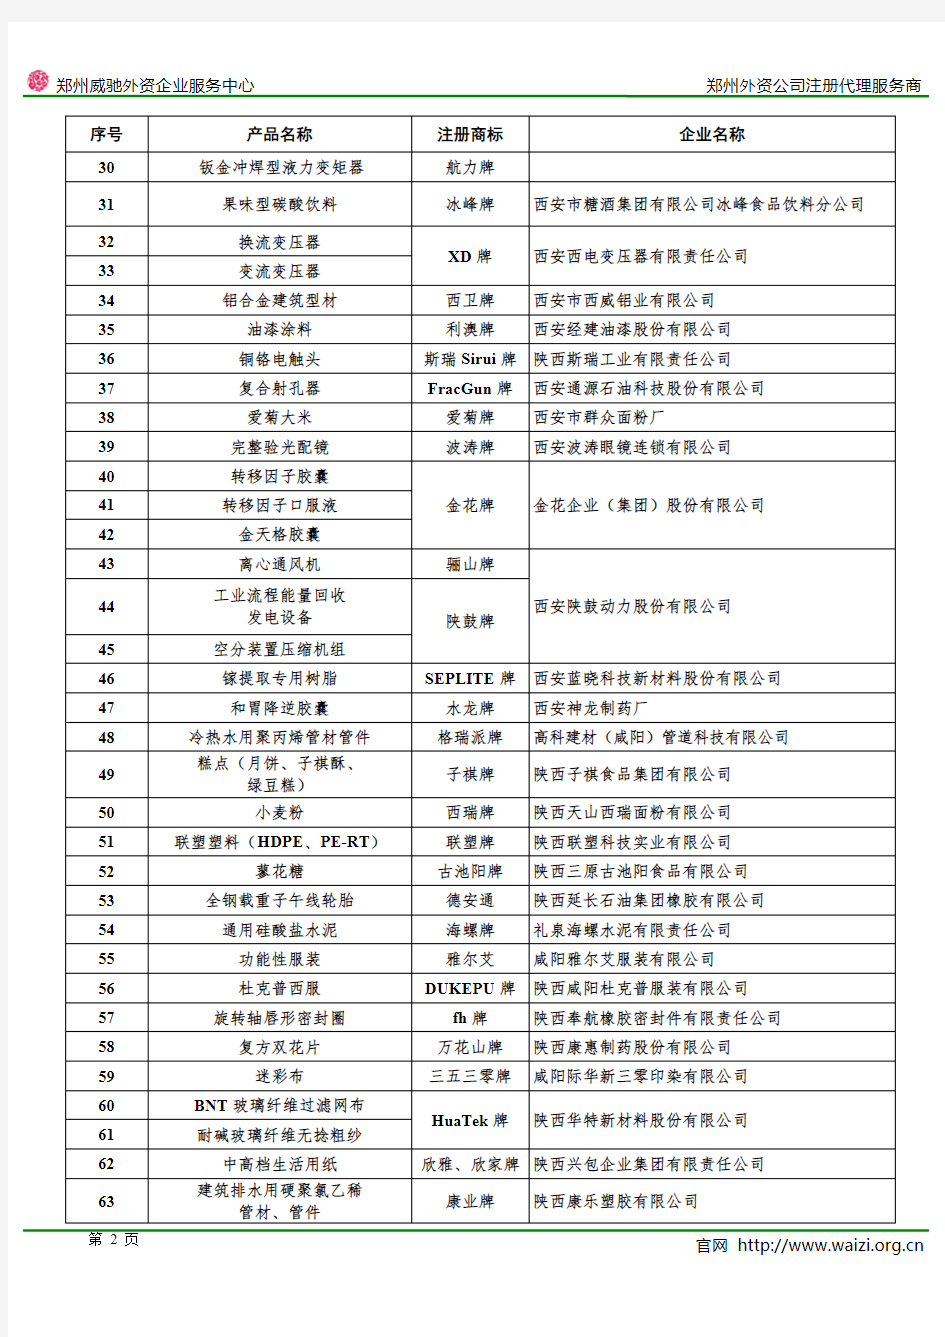 2014年陕西省名牌产品名单